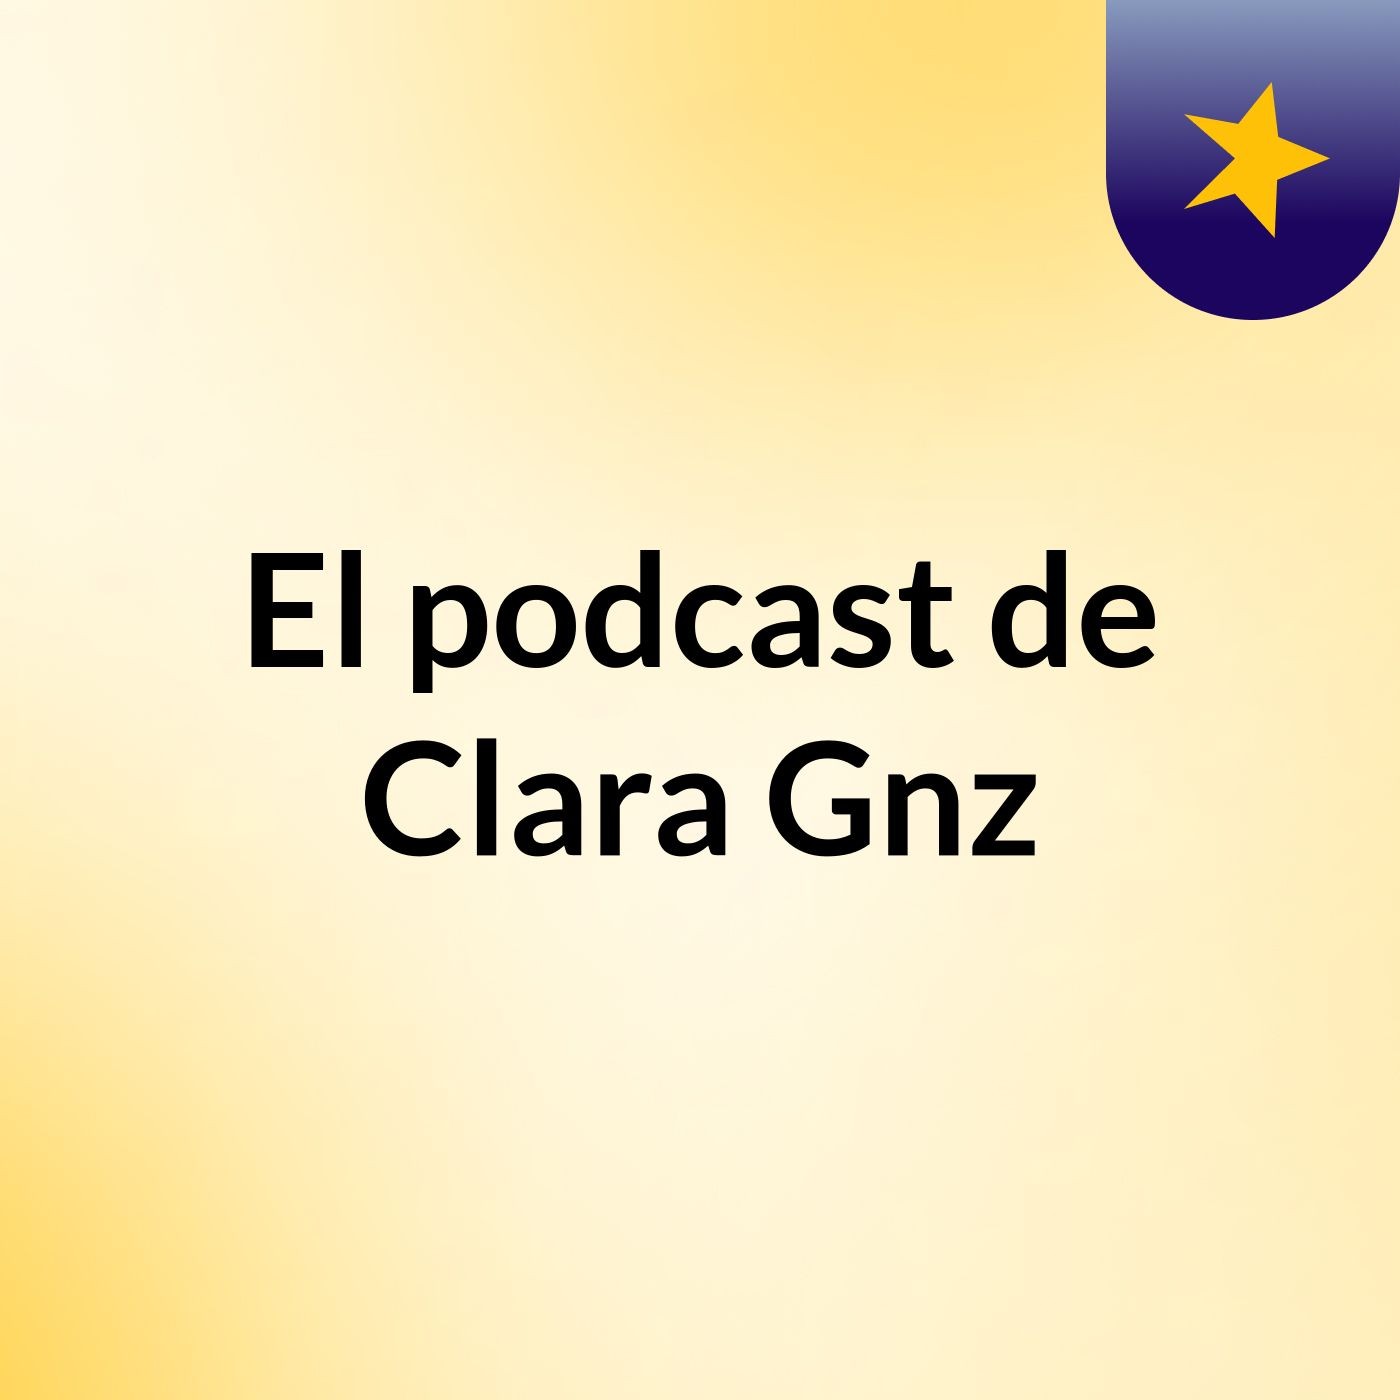 El podcast de Clara Gnz